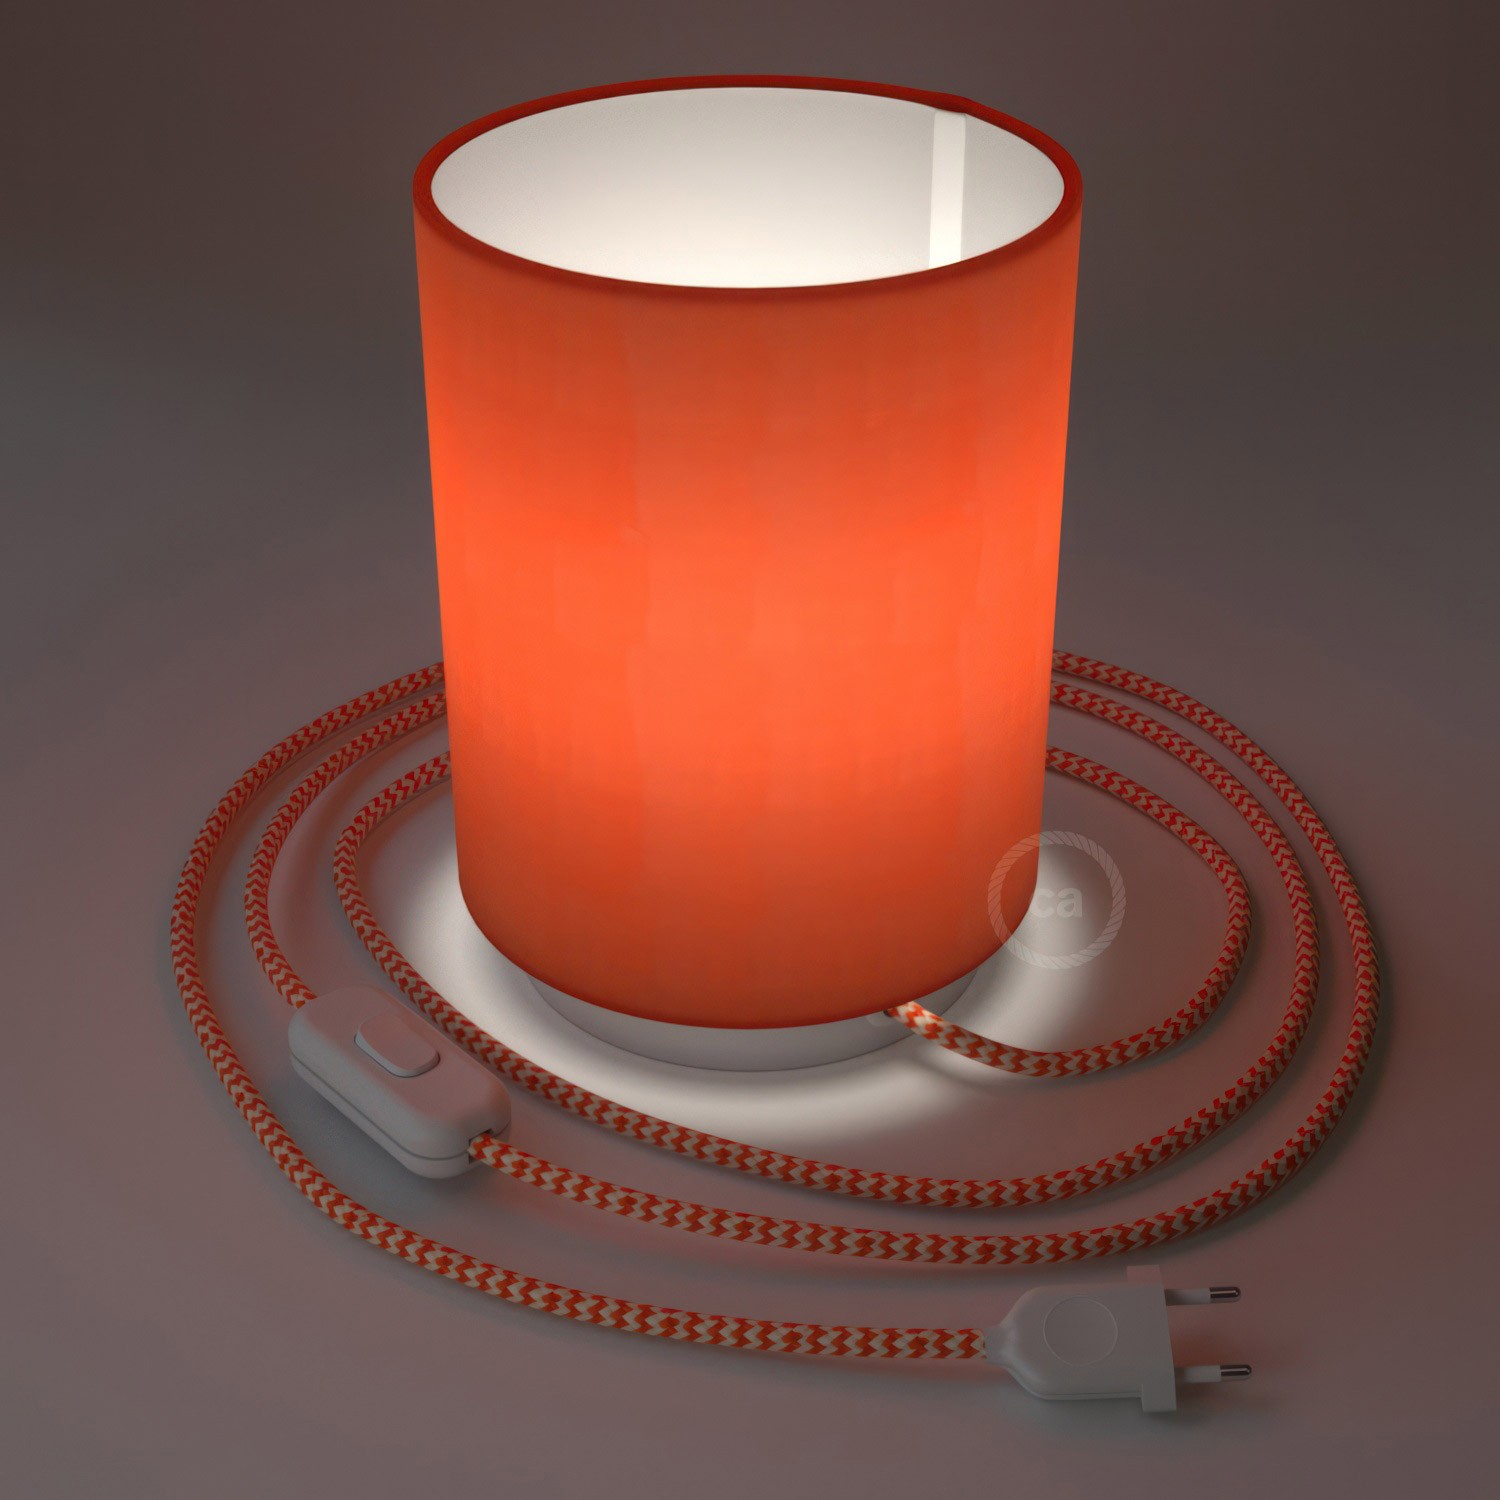 Posaluce aus Metall mit Lampenschirm Cilindro Cinette Aragosta, komplett mit Textilkabel, Schalter und 2-poligem Stecker